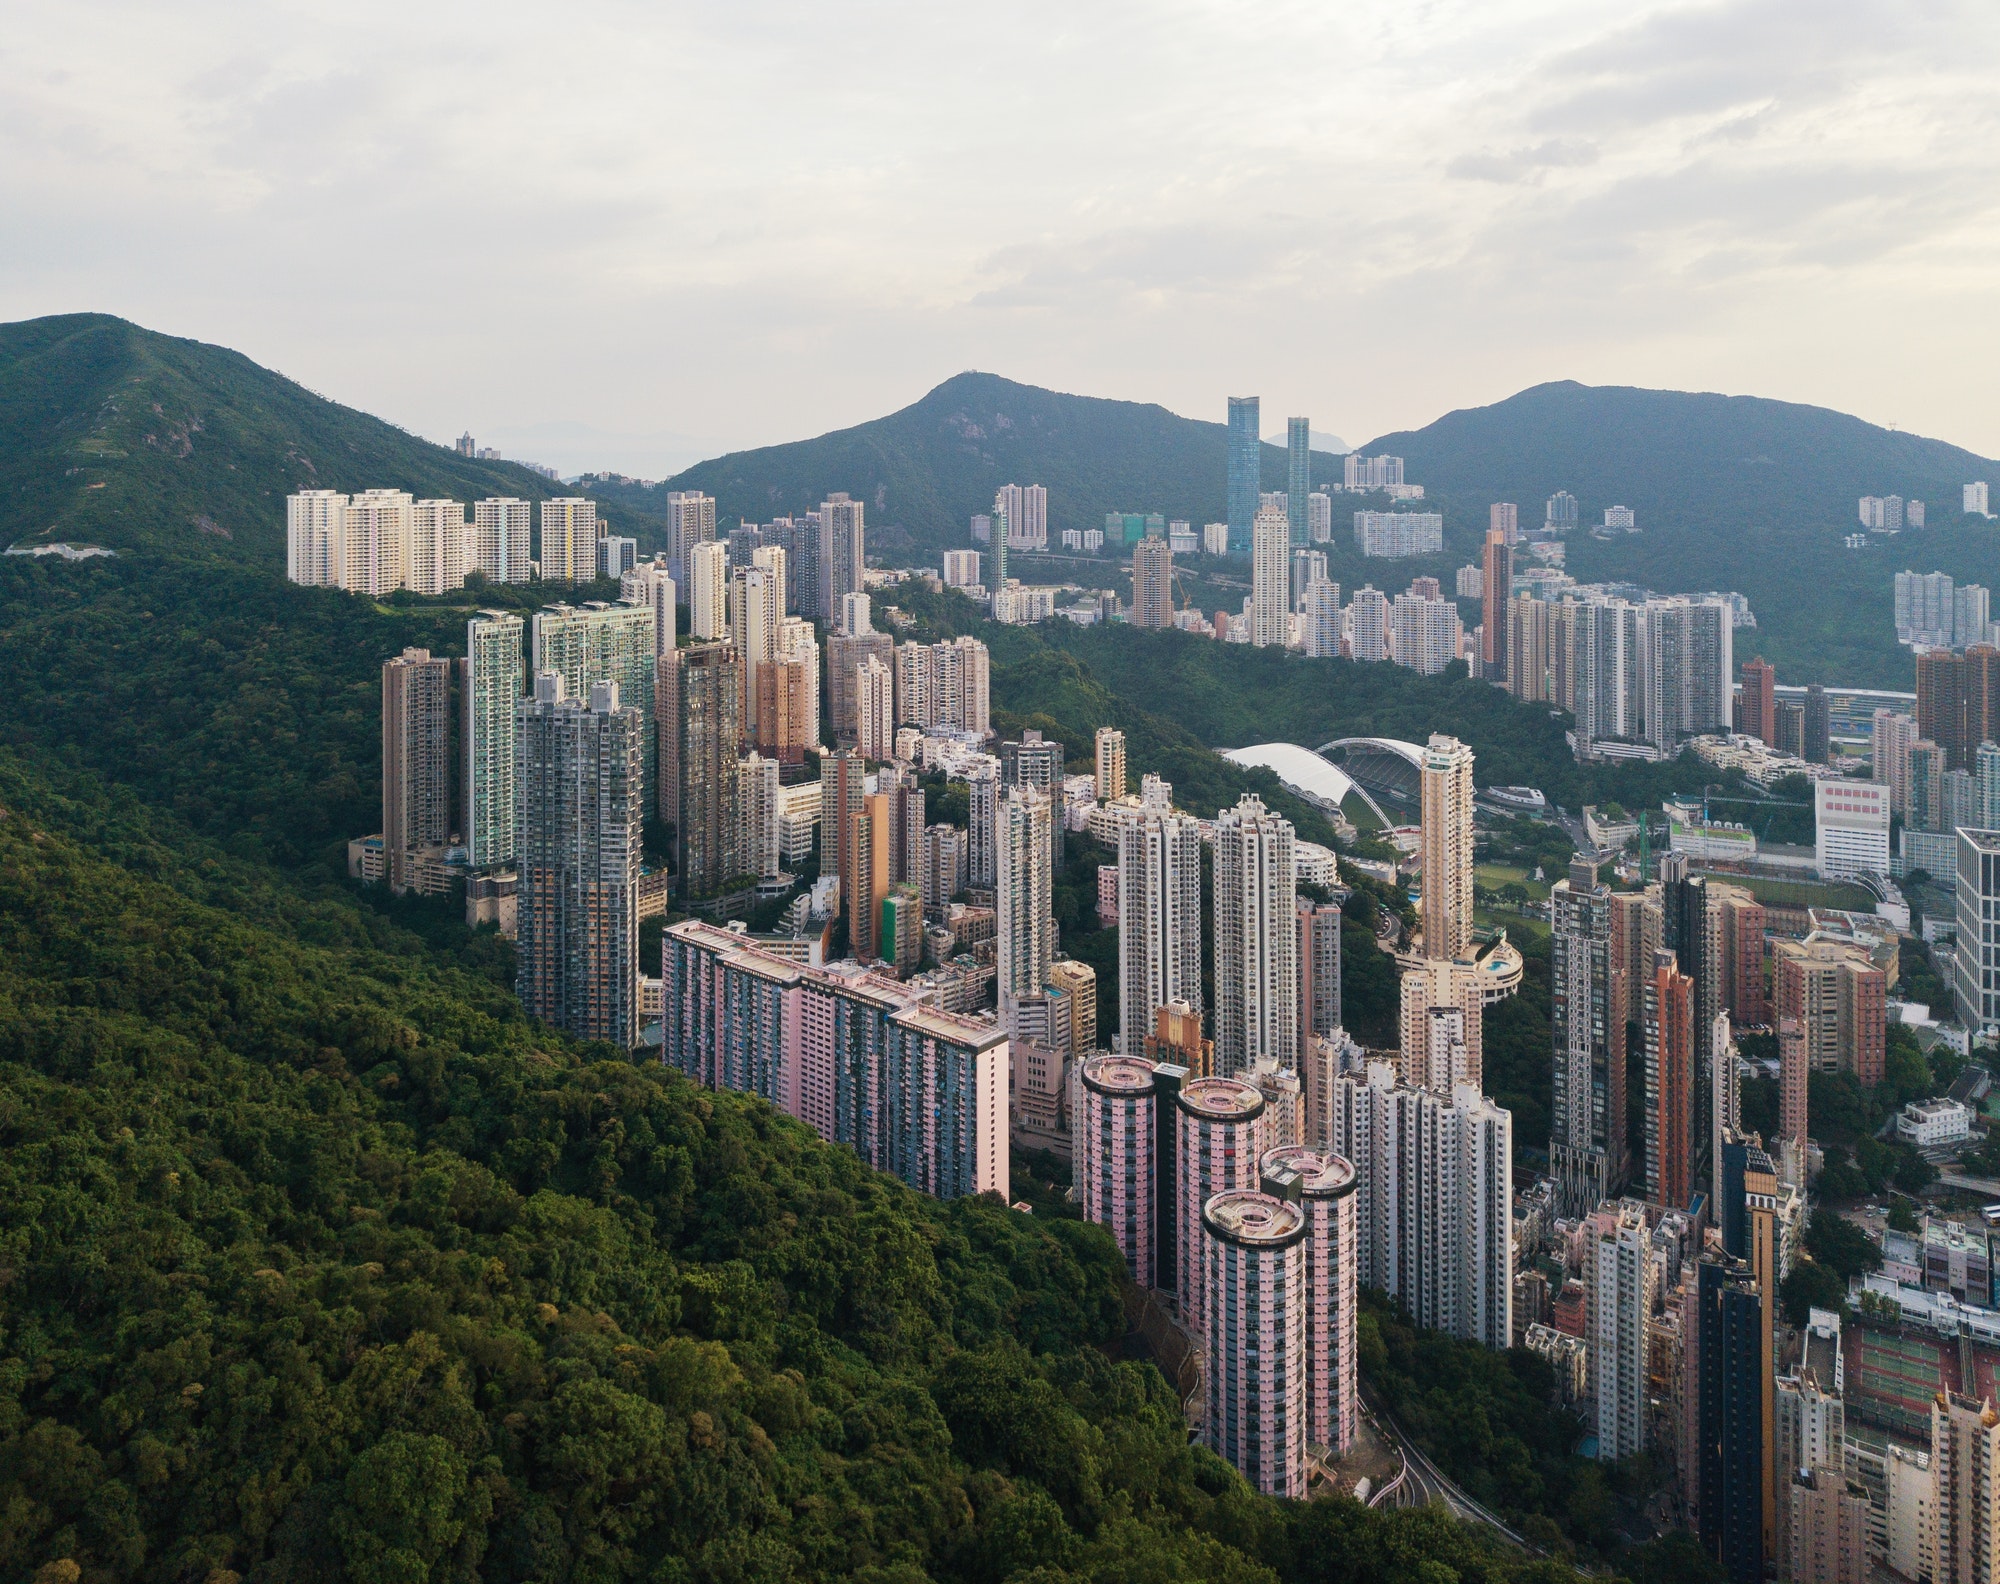 Aerial view of Hong Kong apartments